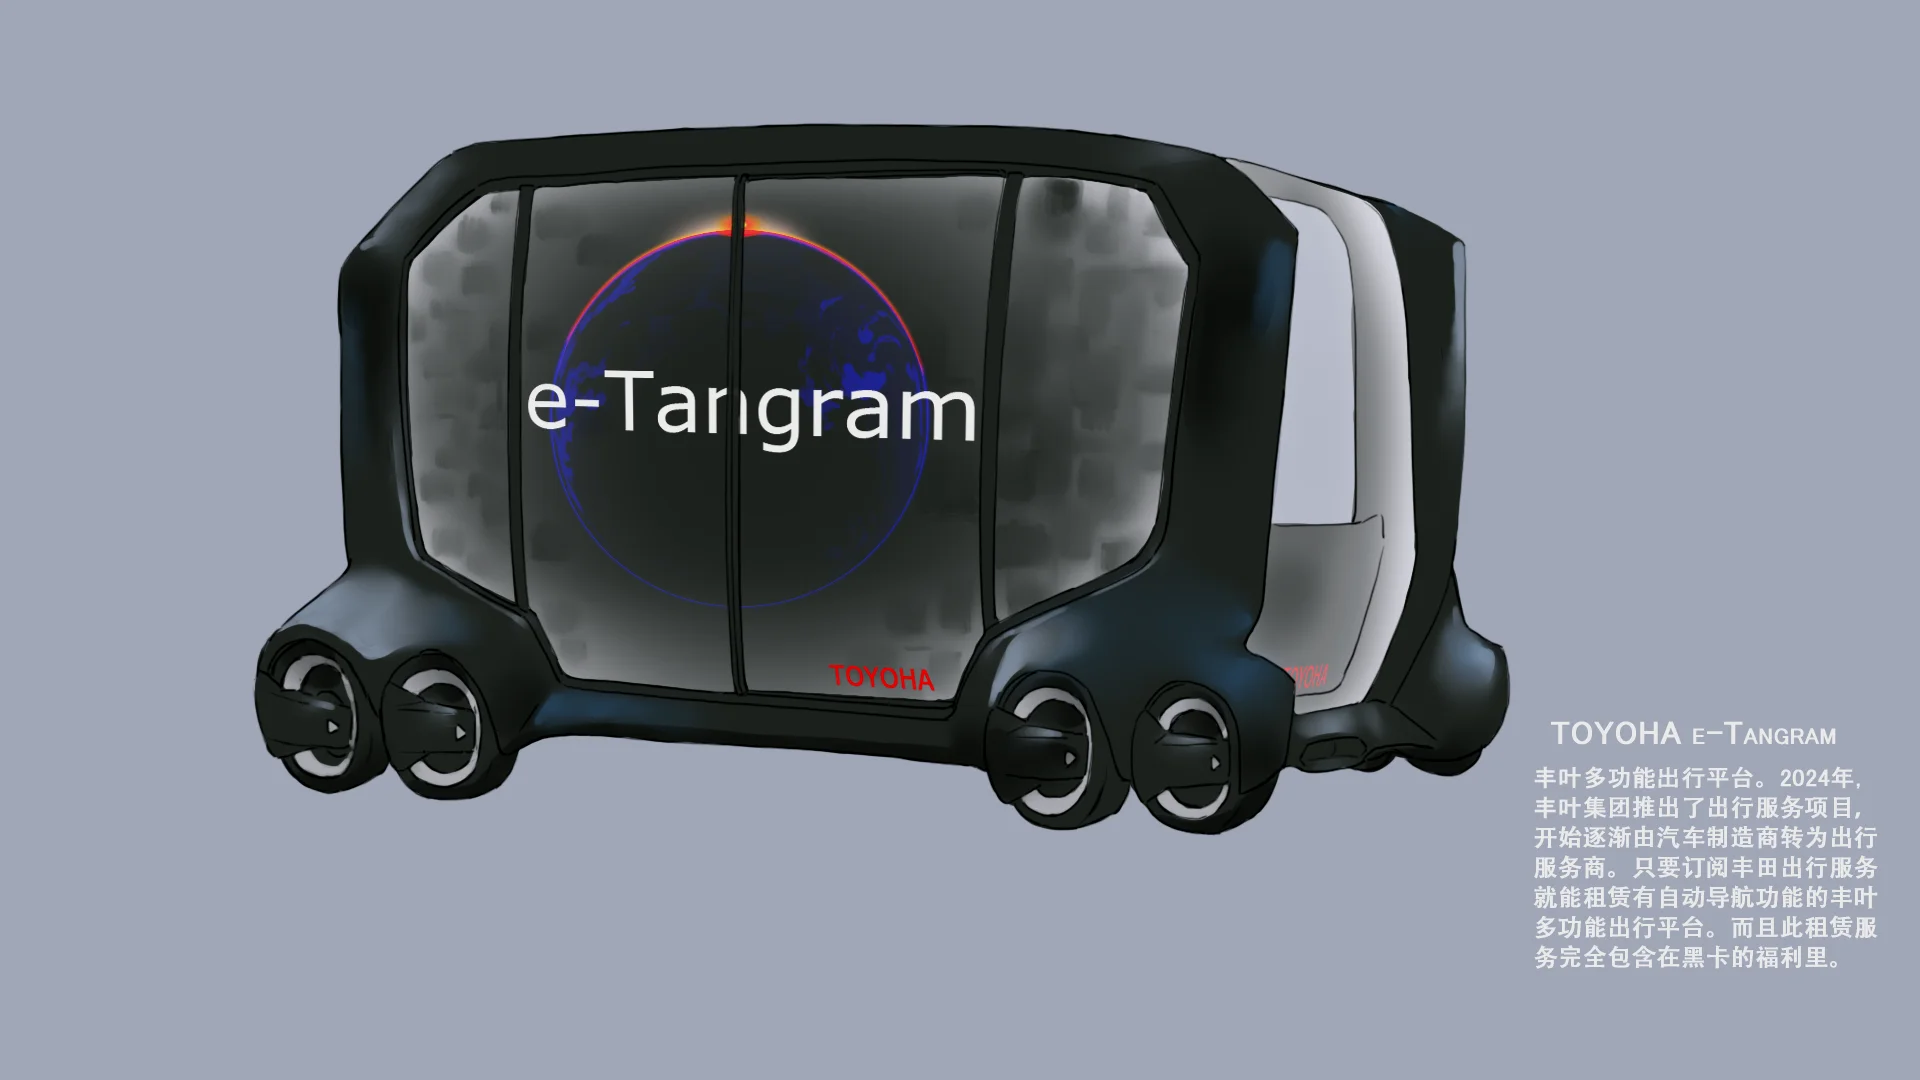 载具 TOYOHA e-Tangram 普通版（原型是丰田的e-Palette）